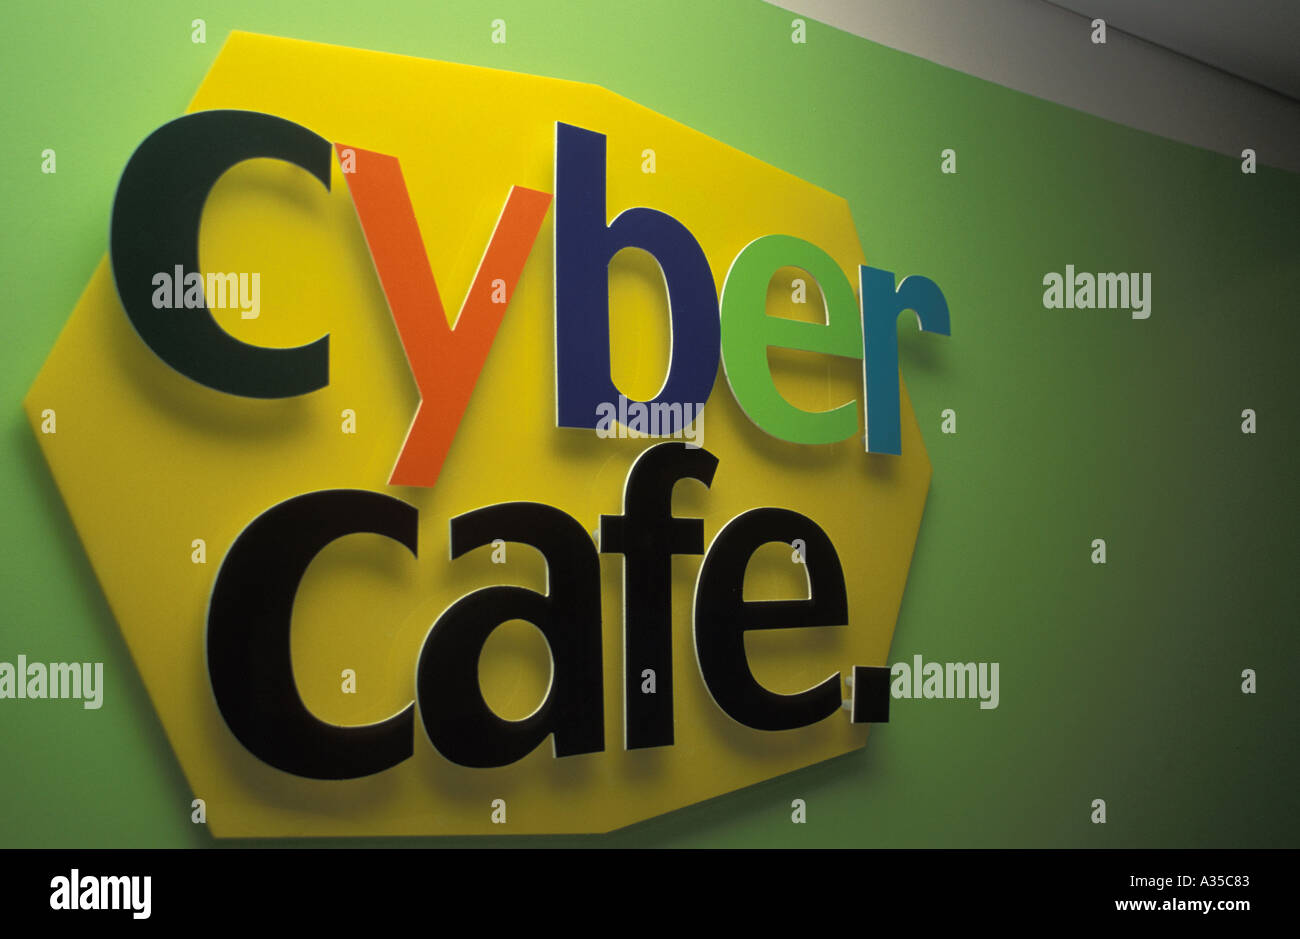 Zeichen Cyber Cafe A35c83 